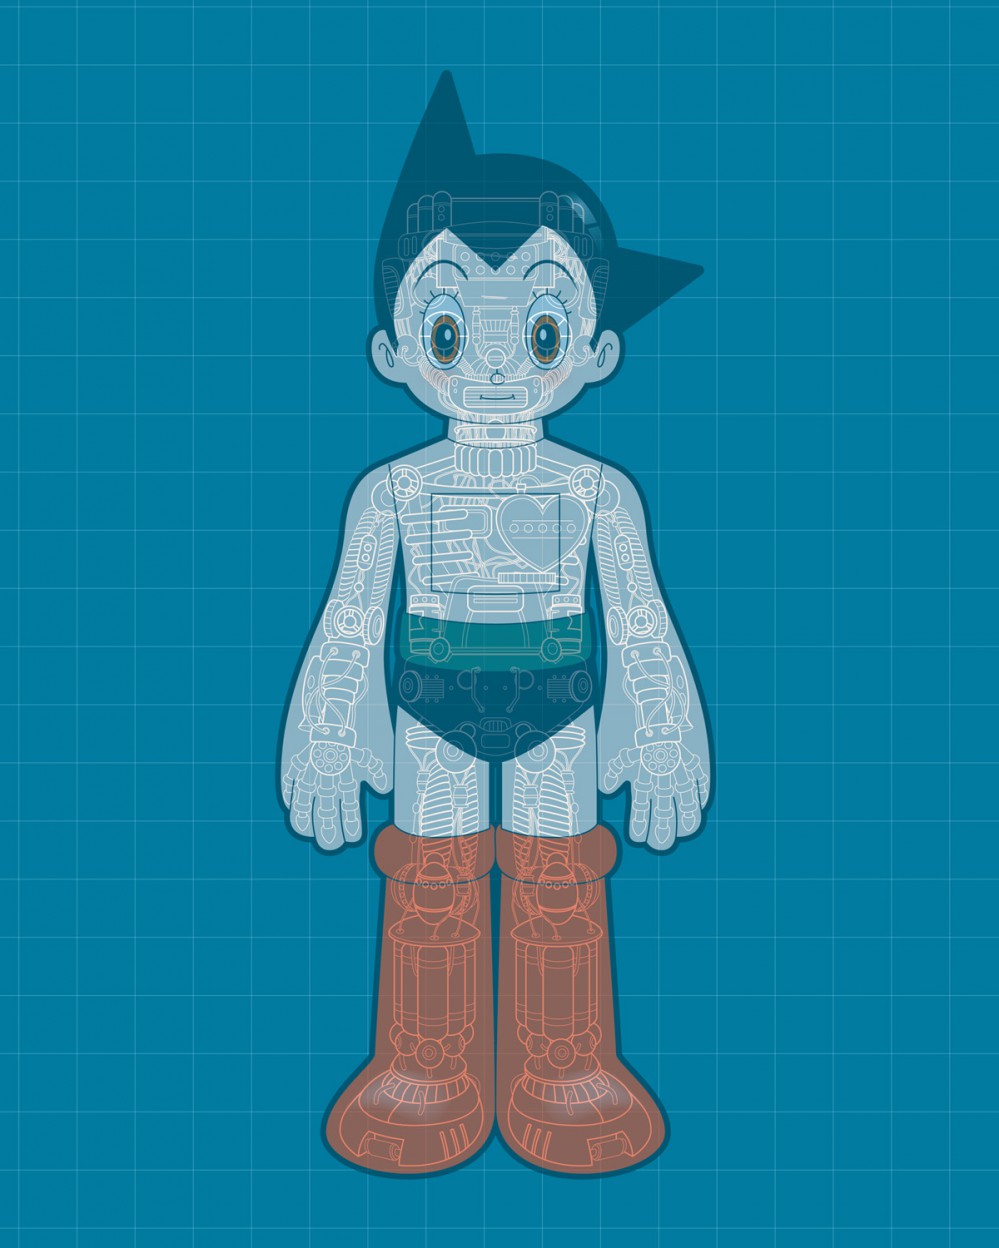 Astro Boy